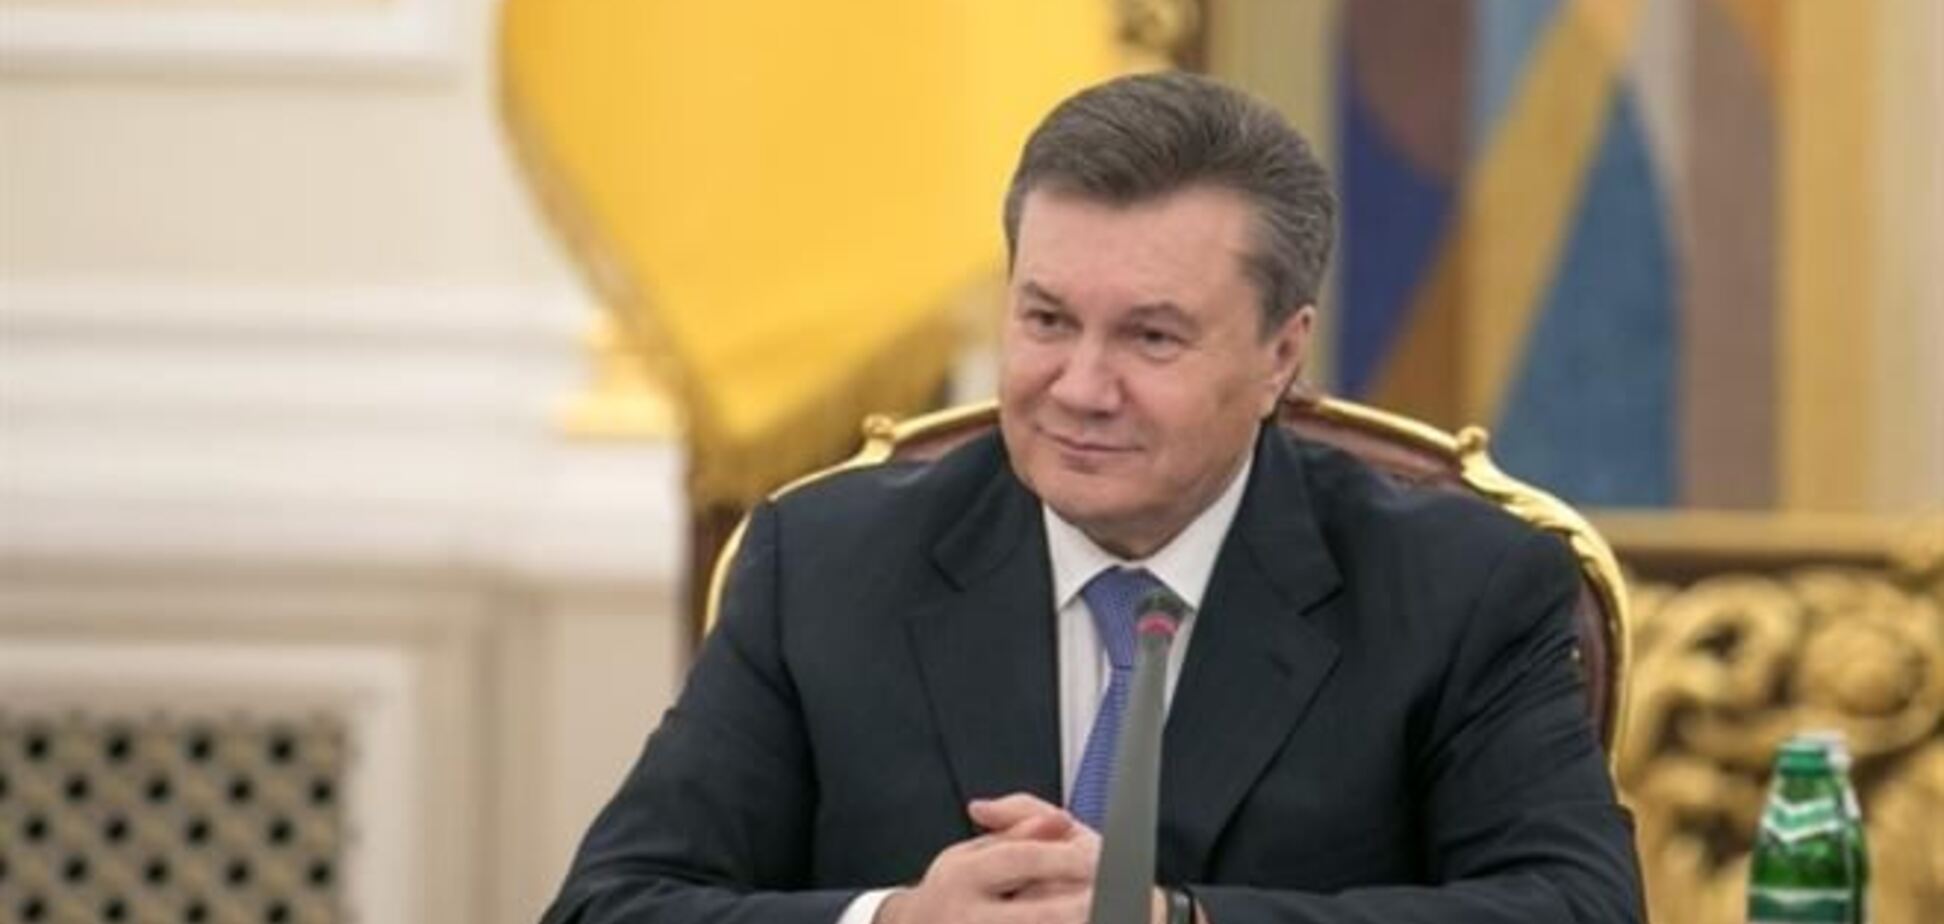 У ЗМІ потрапила копія угоди з врегулювання кризи, над яким роздумує Янукович